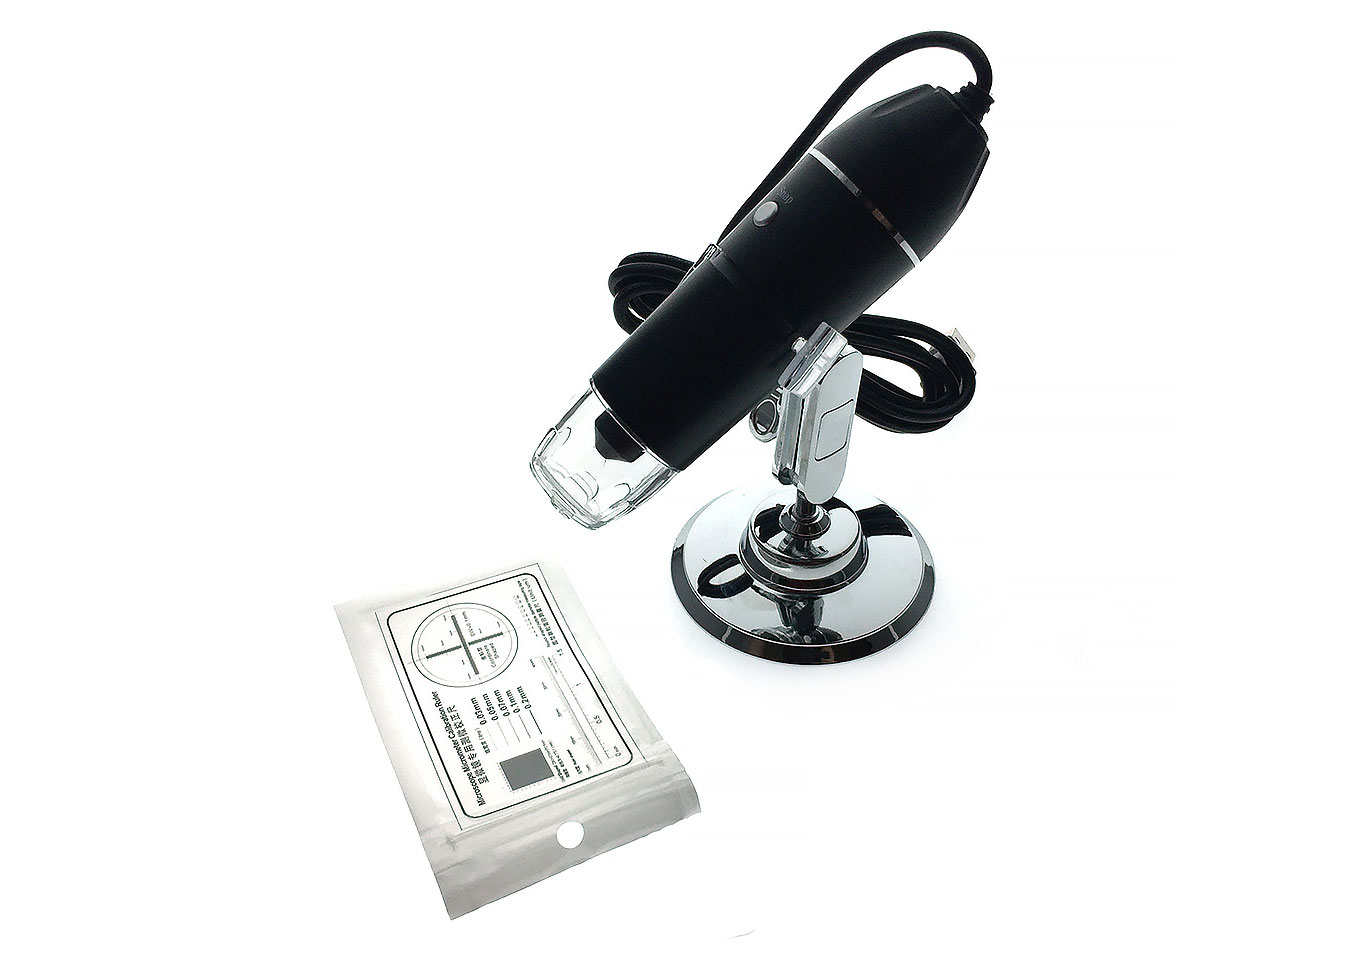 Микроскоп детский Espada USB-микроскоп цифровой U1600x 76505 микроскоп espada портативный цифровой e um21600x c камерой и увеличением 1600x 45549